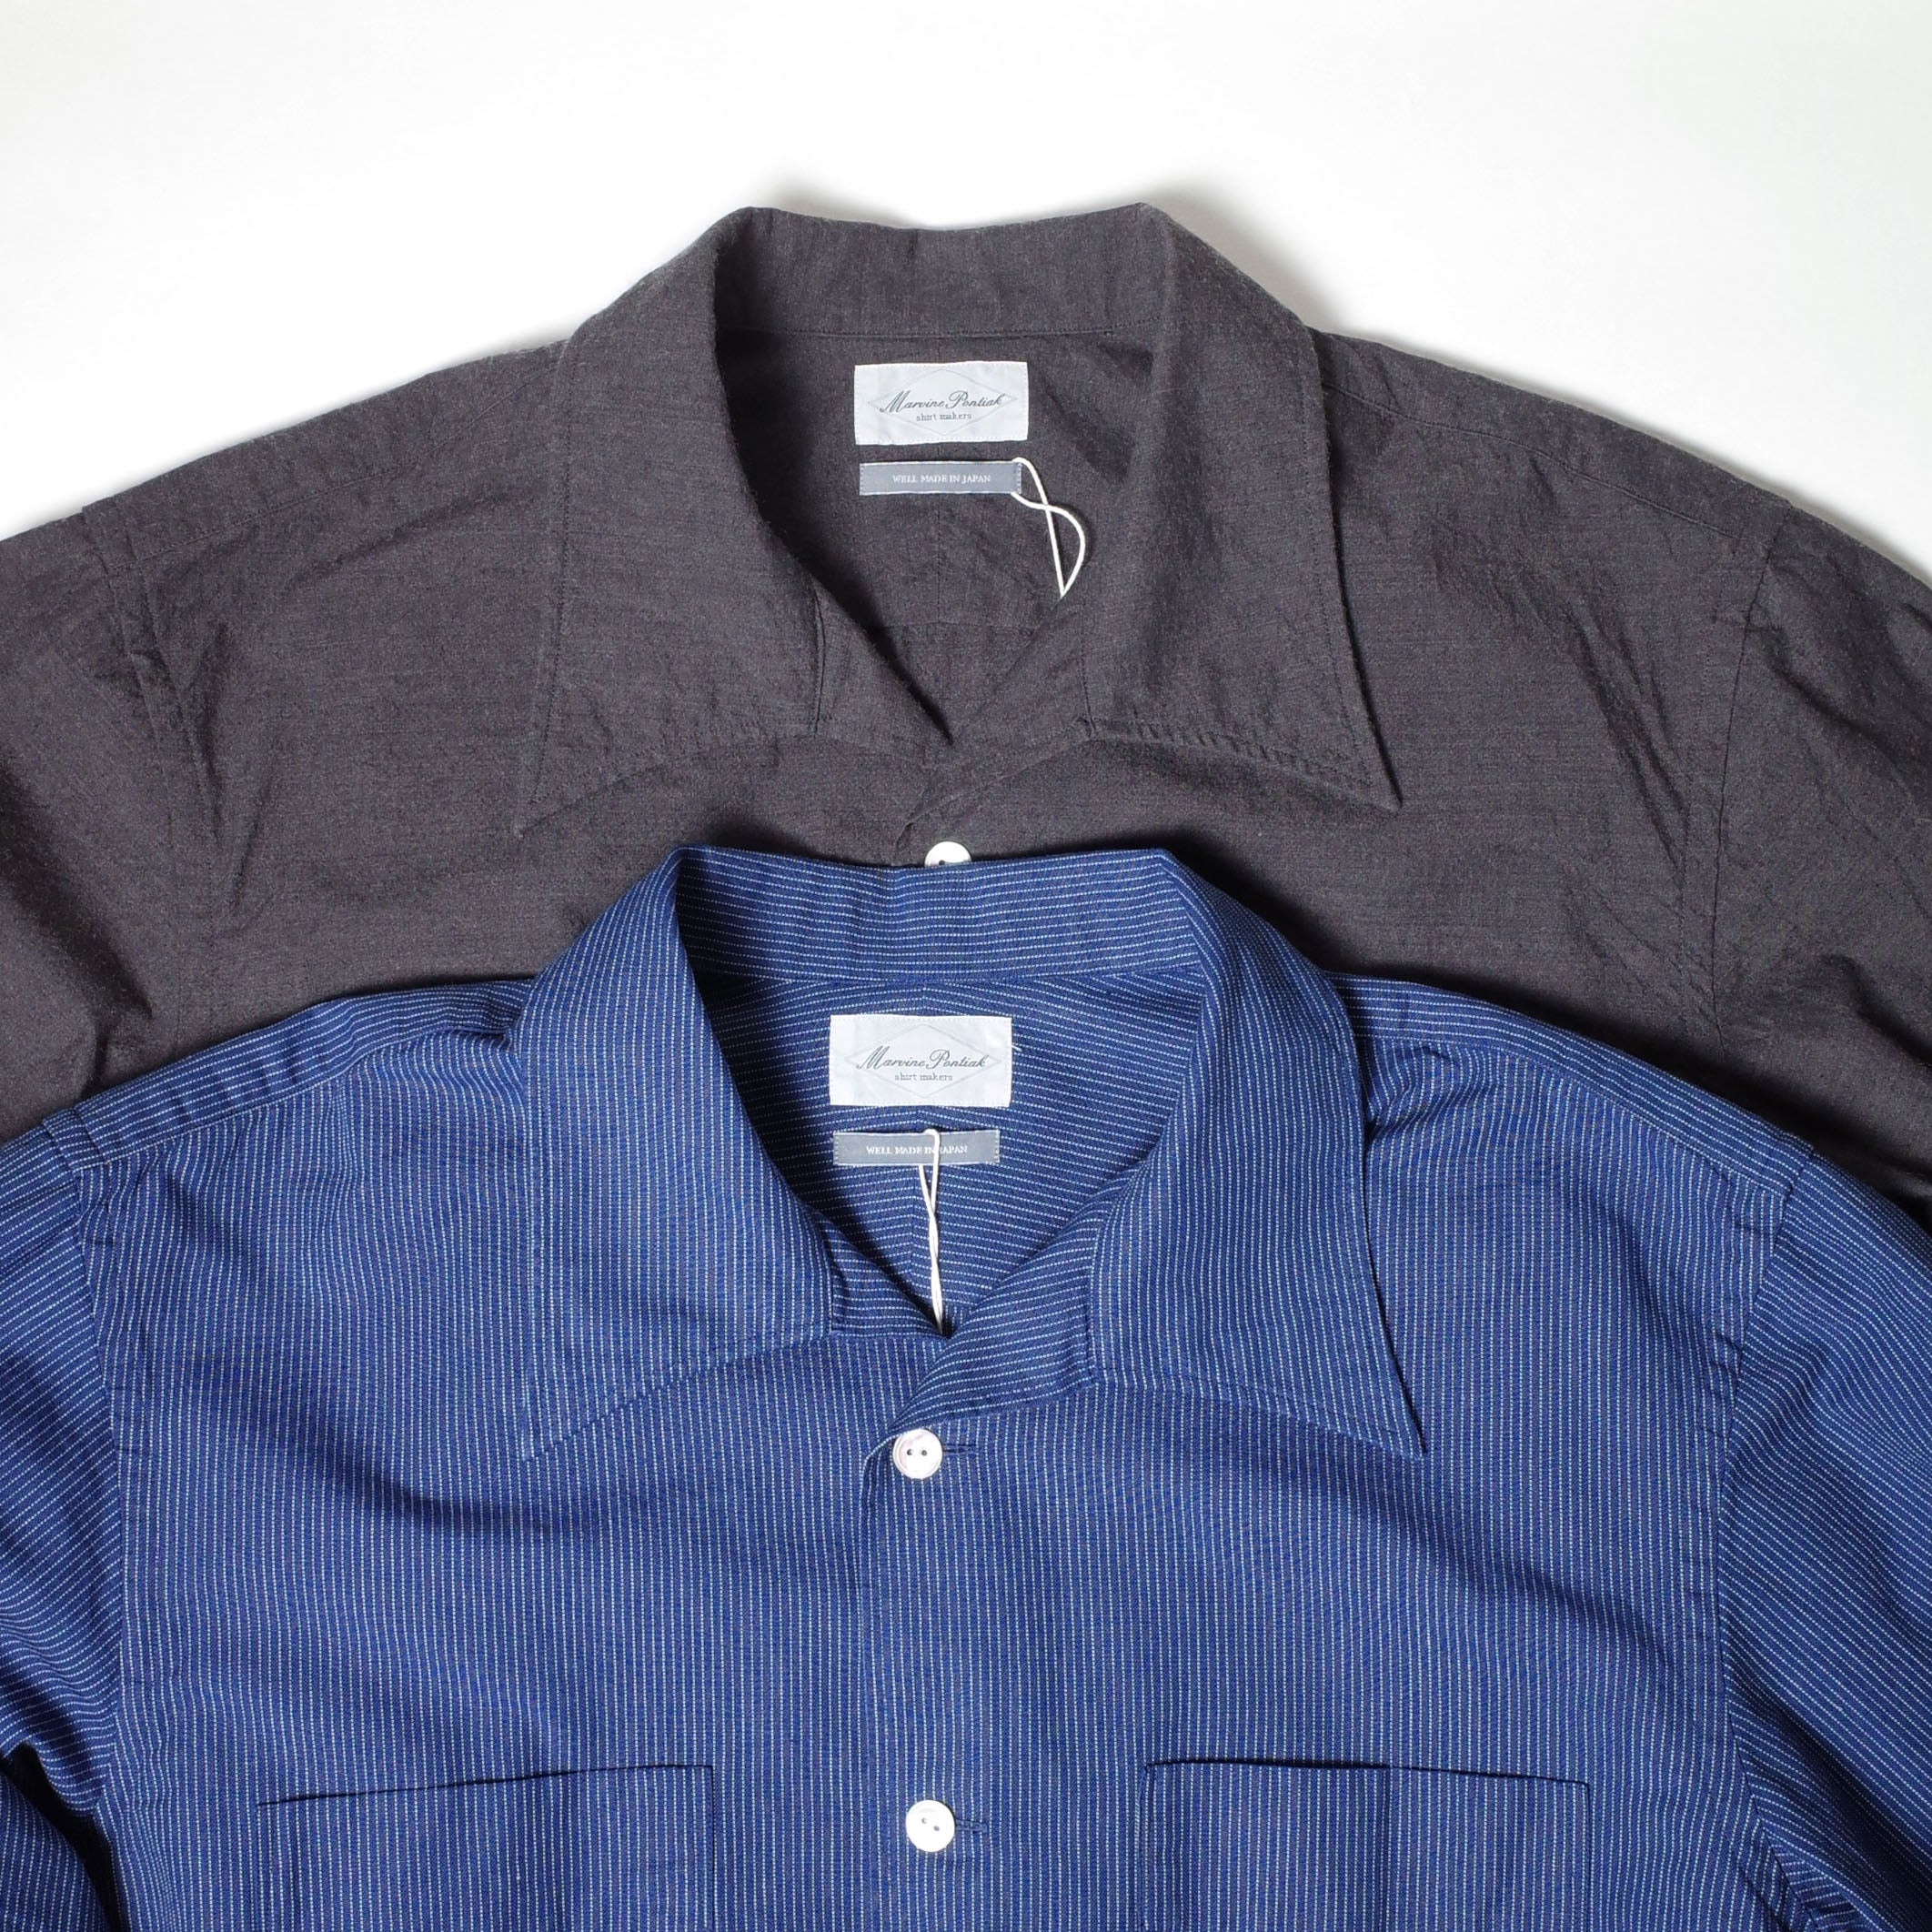 Marvine Pontiak shirt makers オープンカラーシャツ